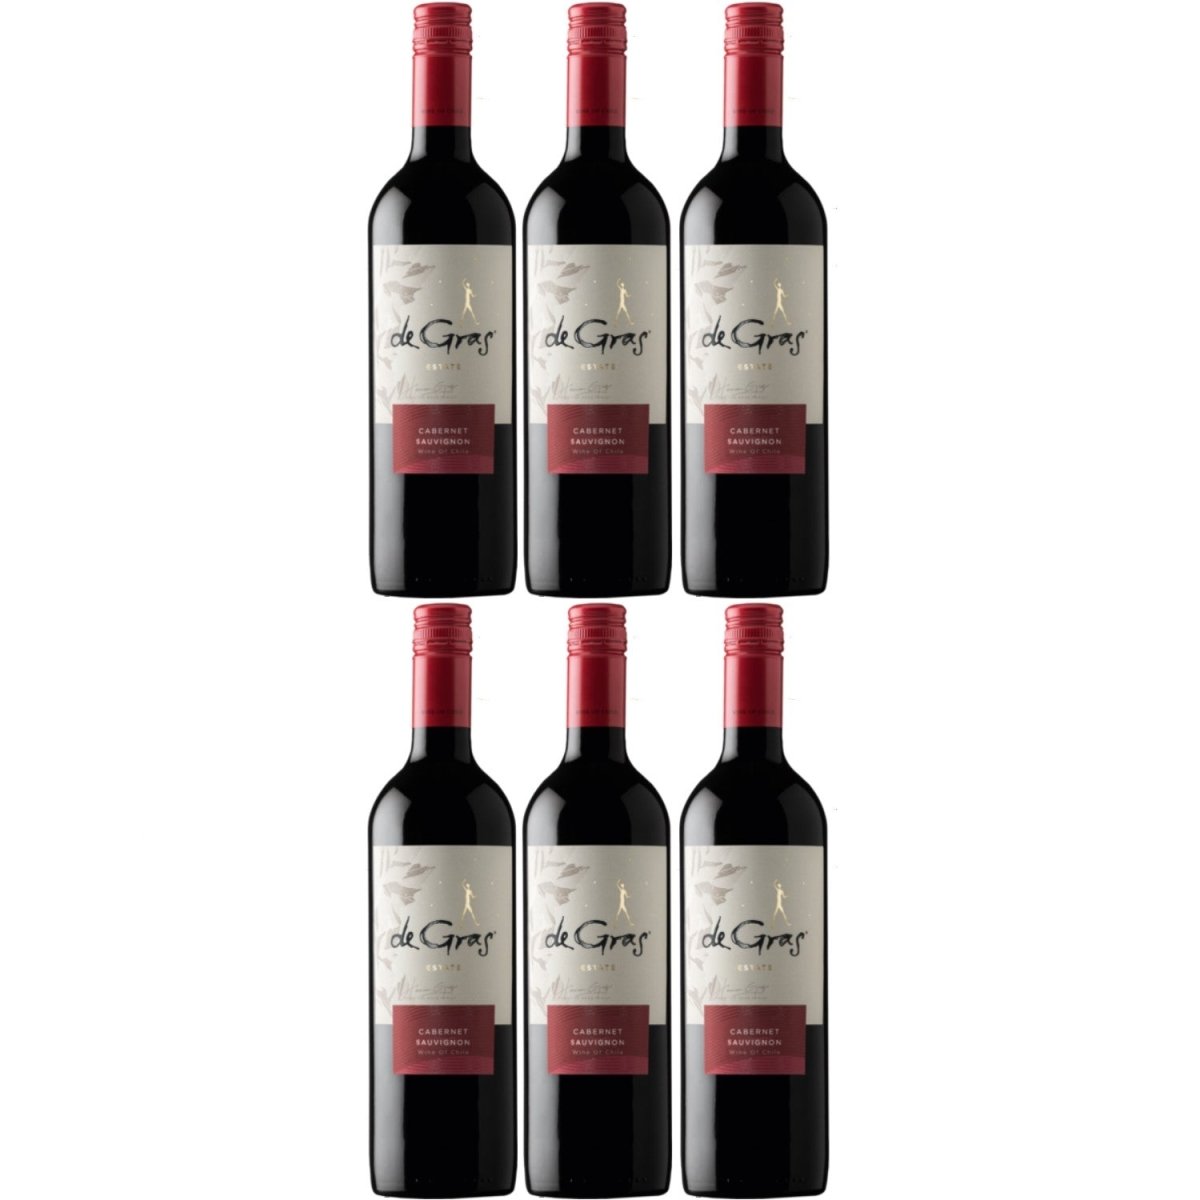 De Gras Cabernet Sauvignon Rotwein chilenischer Wein trocken Chile (6 x 0.75l) - Versanel -